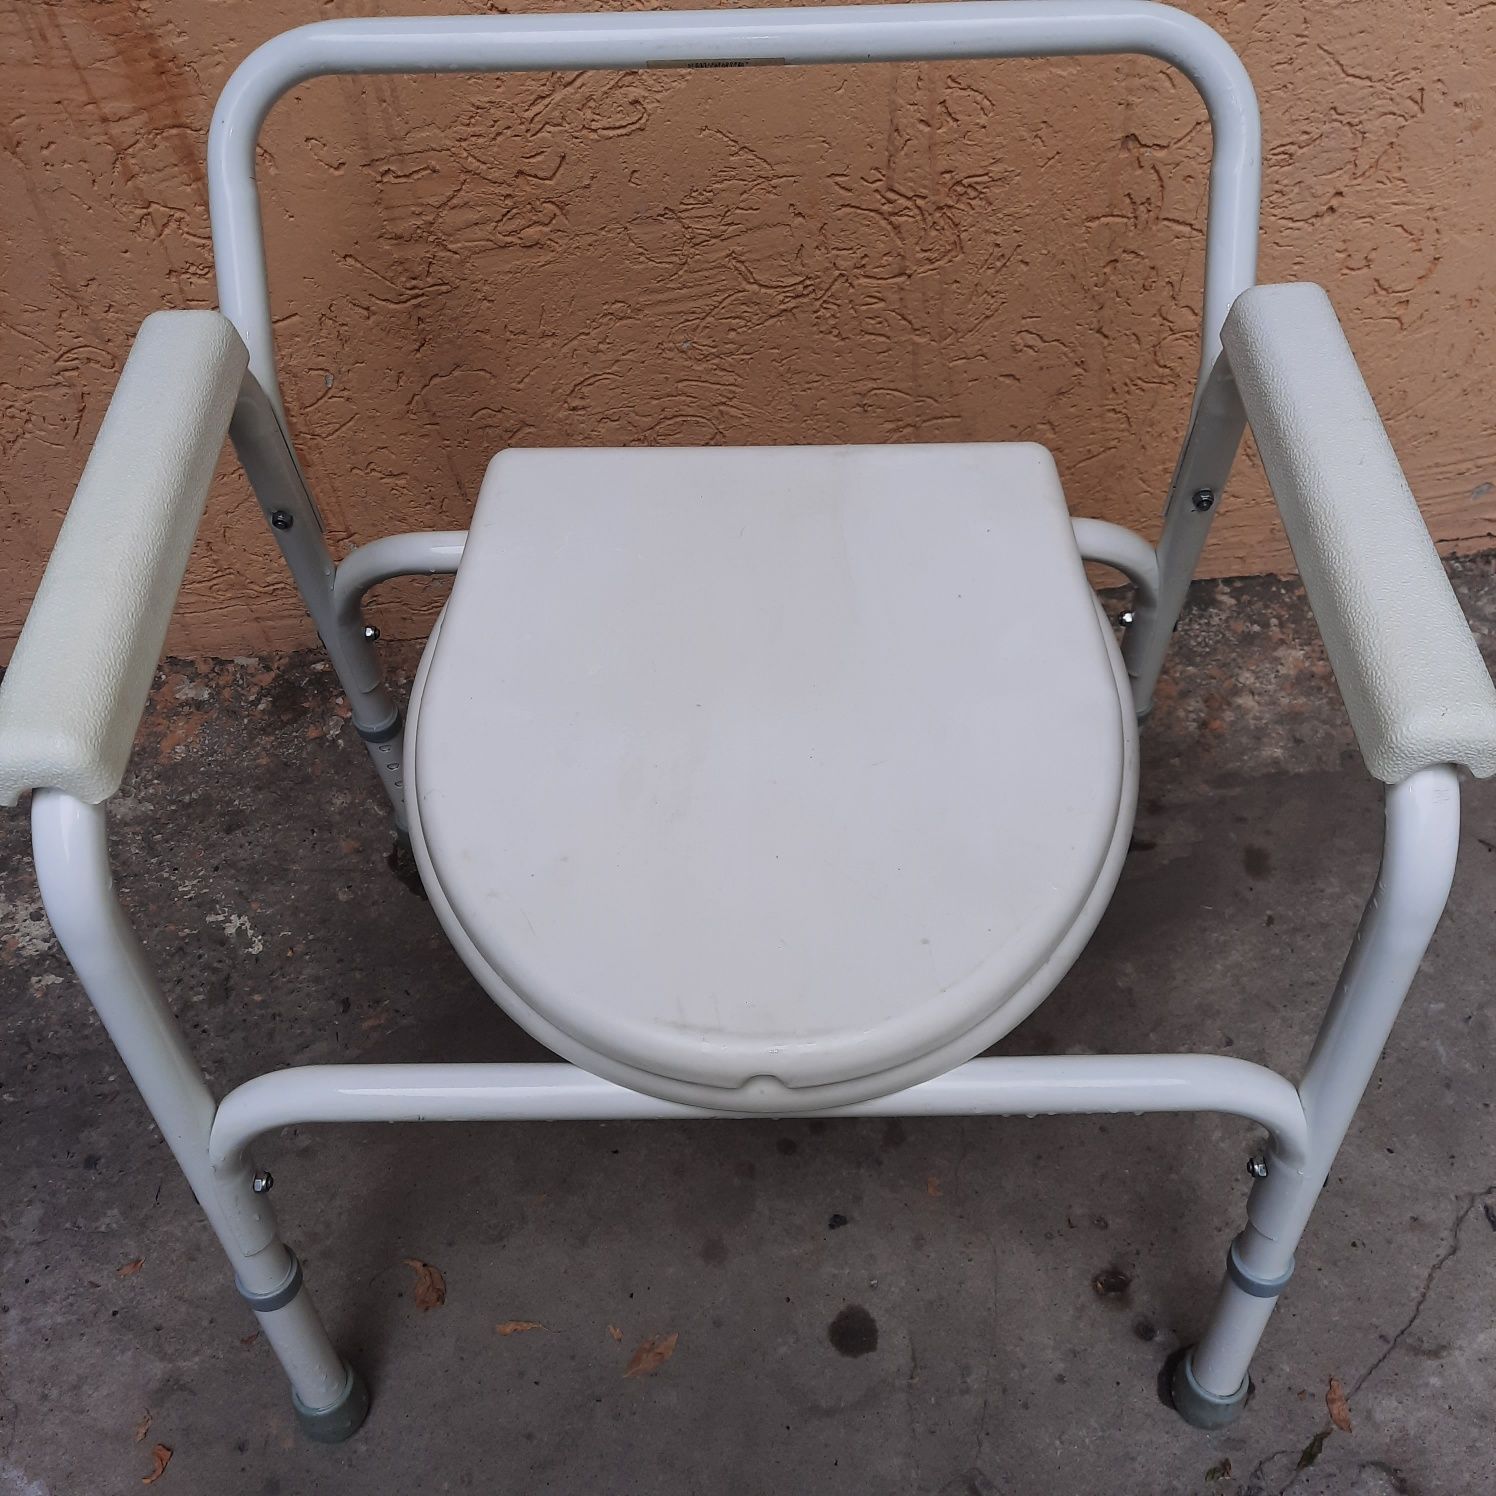 Продается санитарный стул. Для инвалидов .